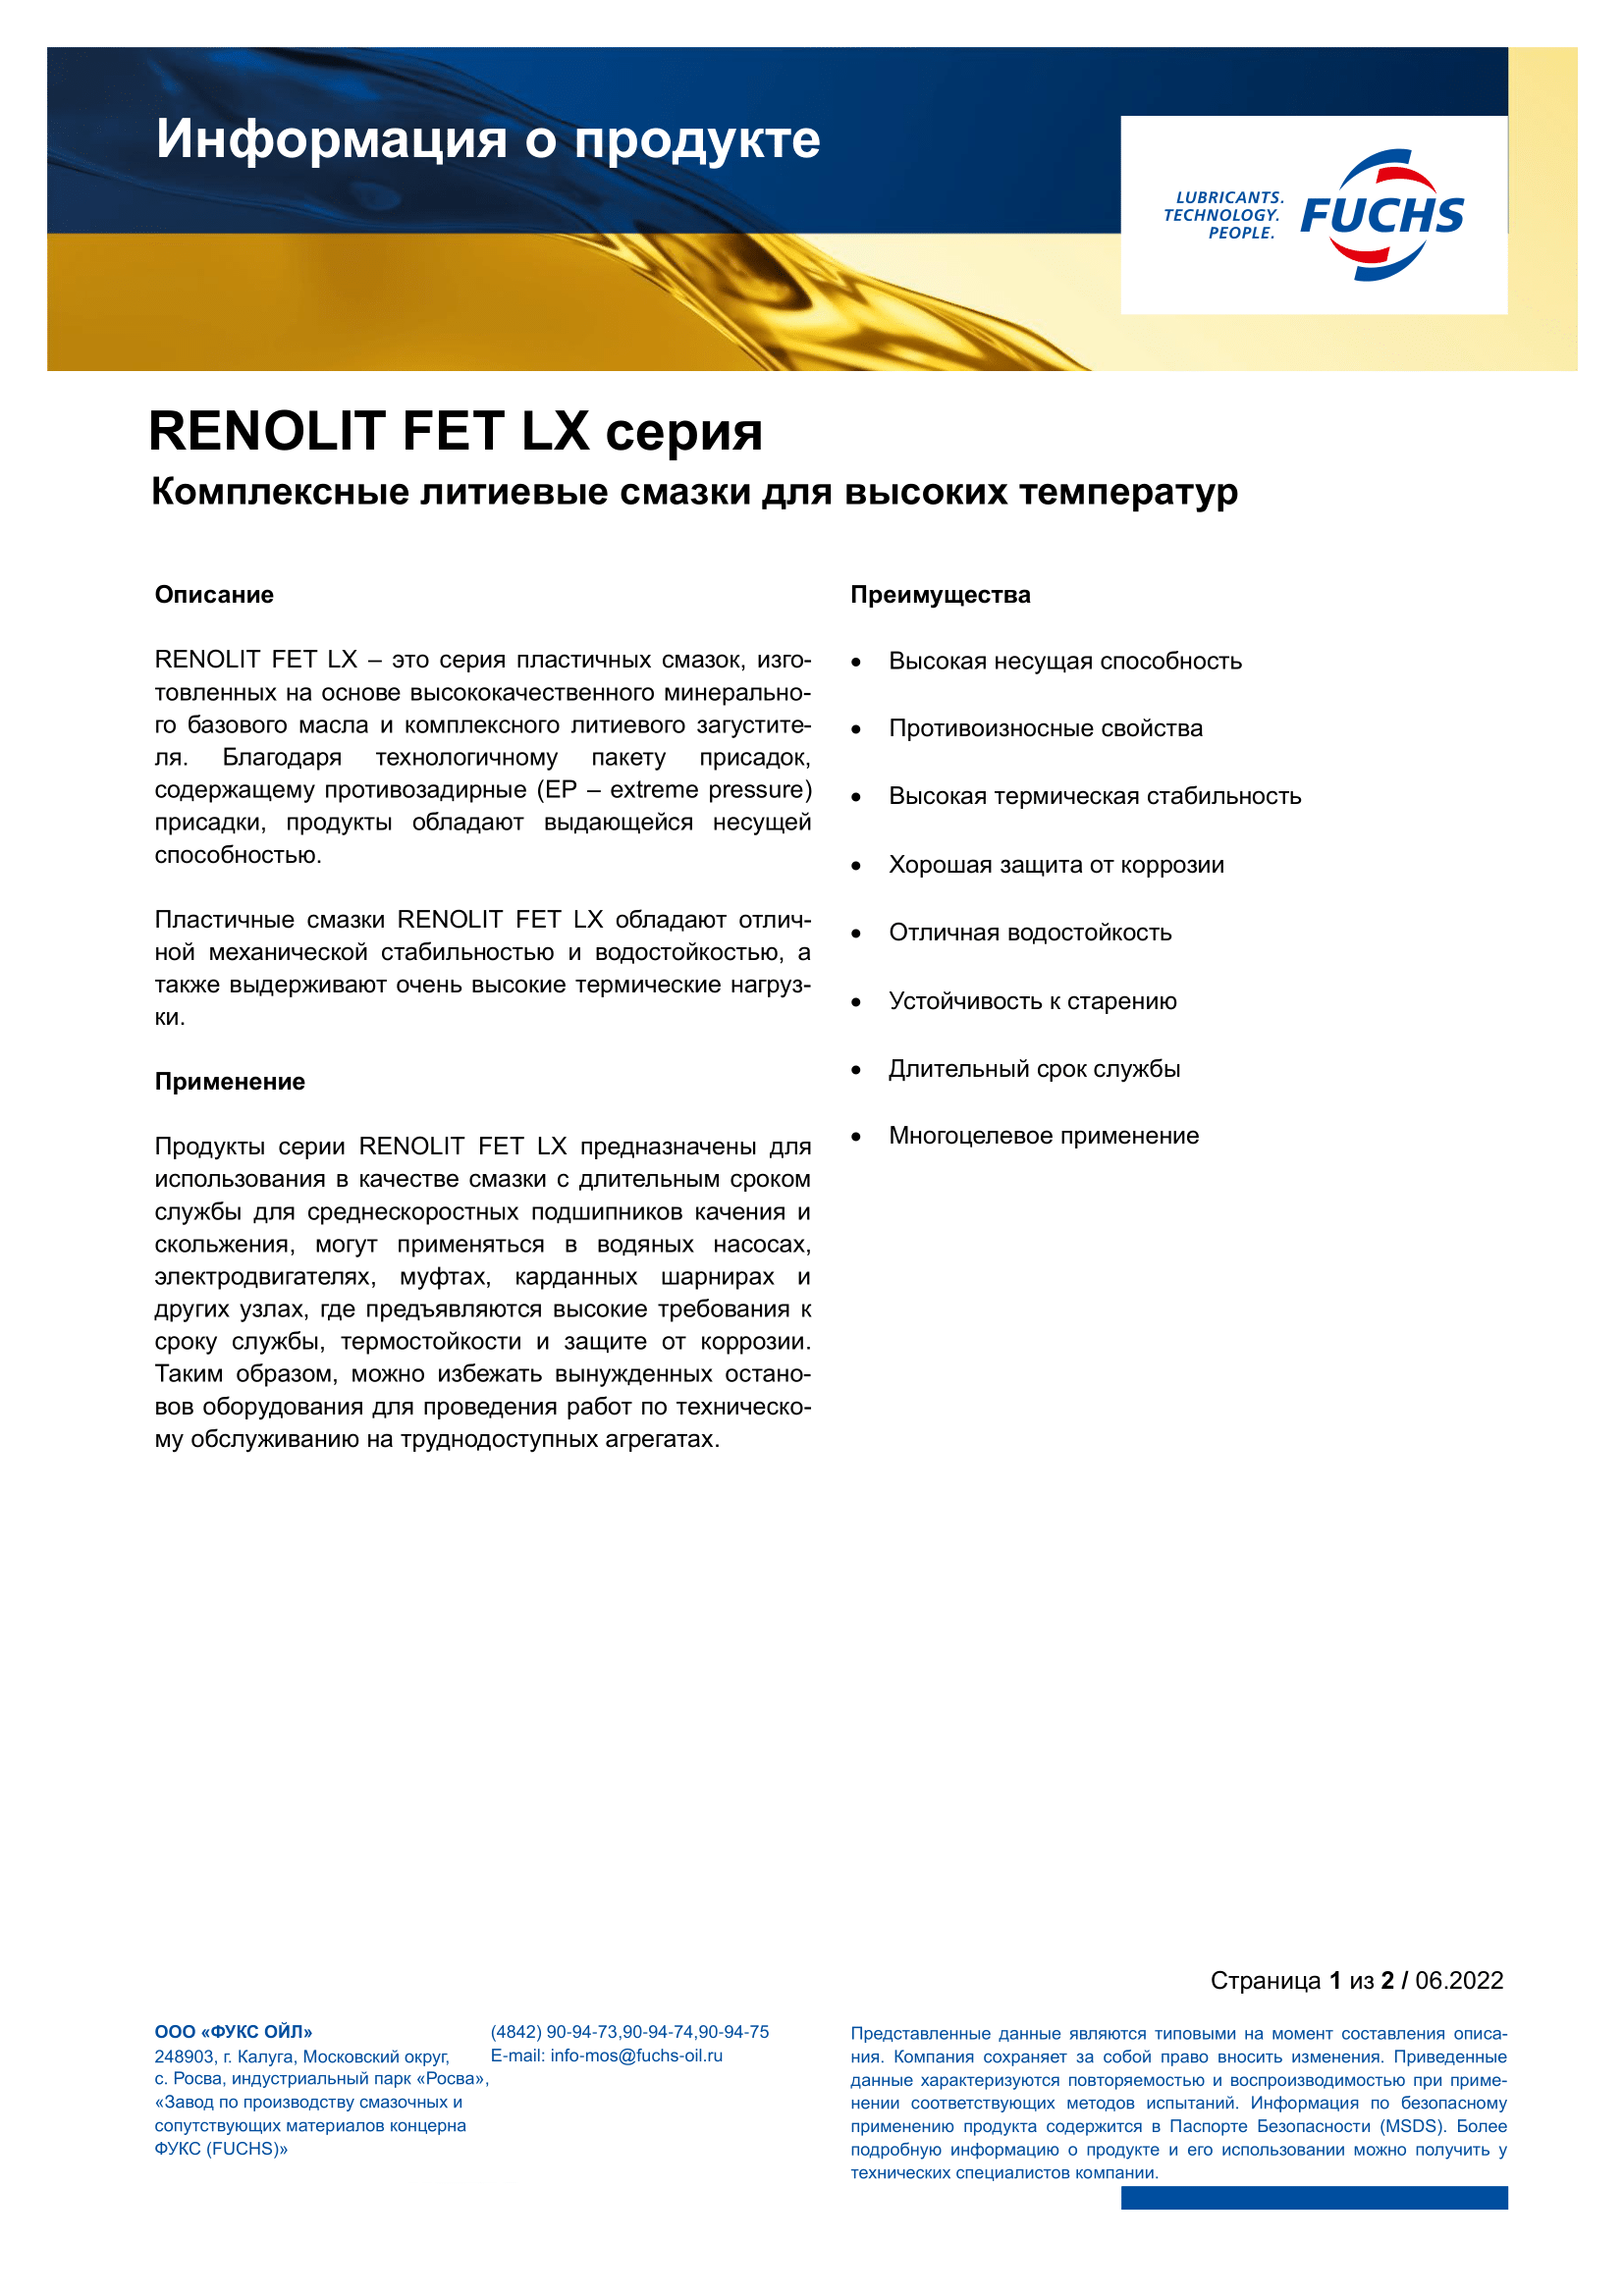 RENOLIT FET LX 3